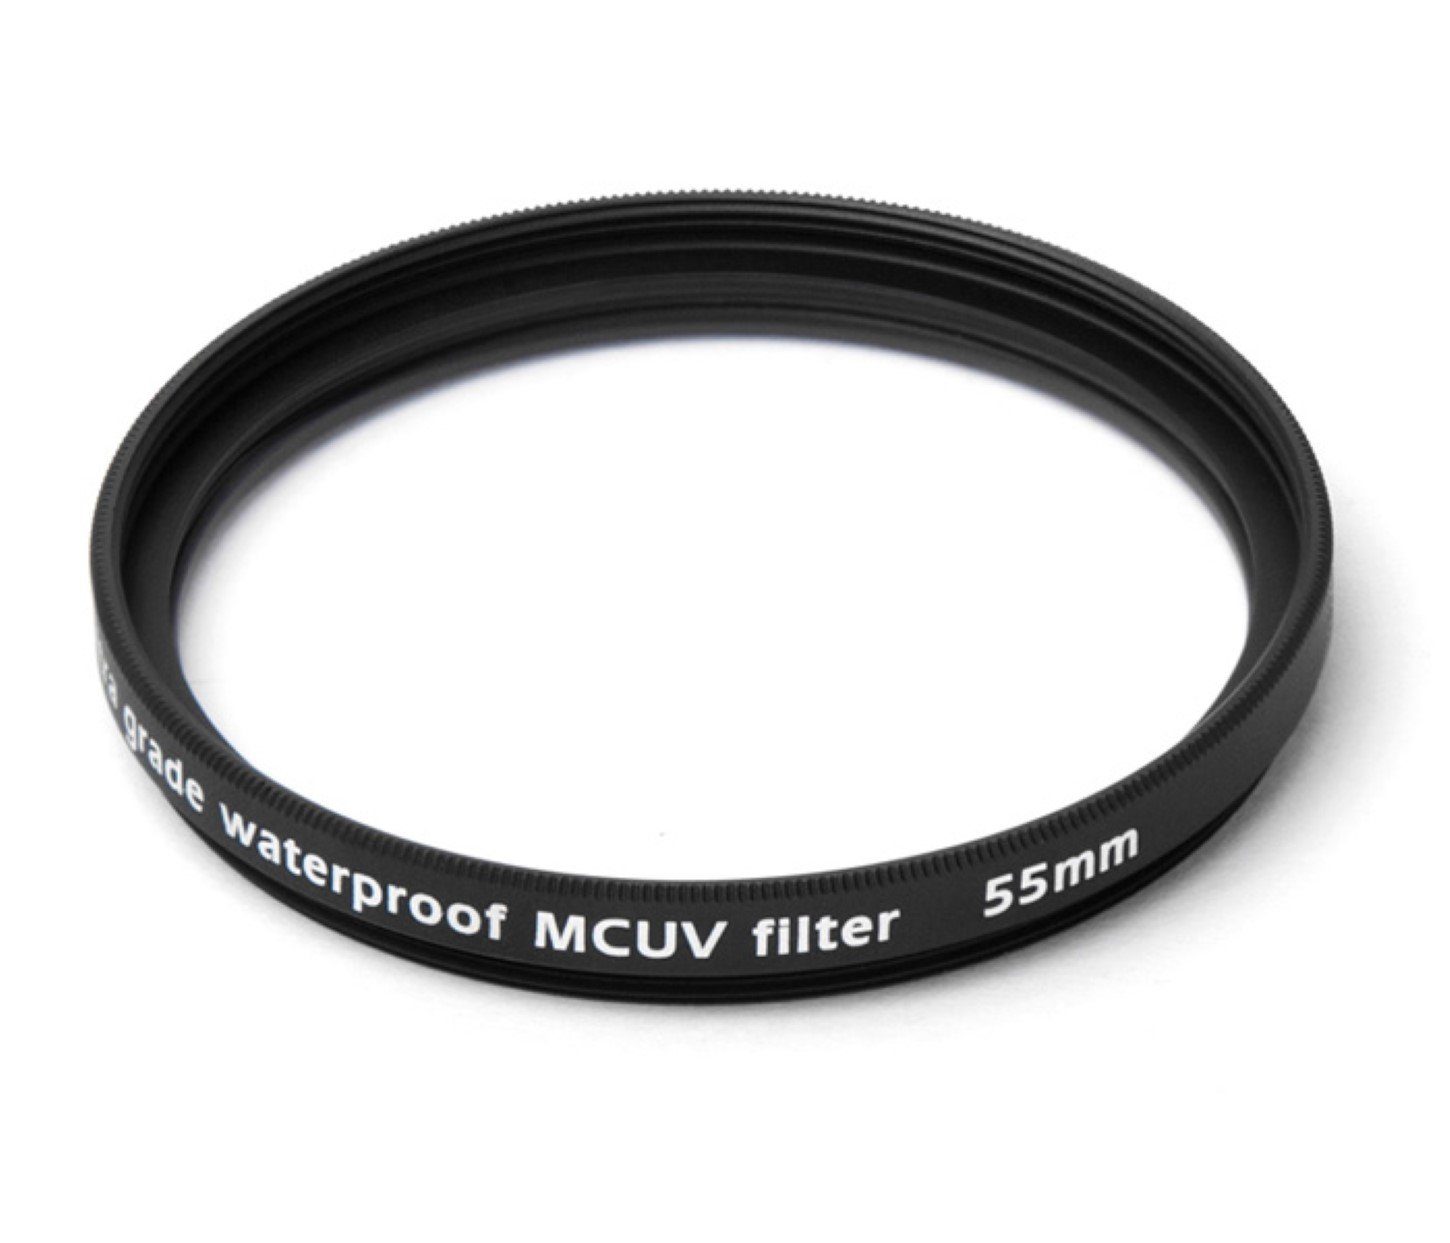 55 mm Filter Multicoated Foto-UV-Filter vergütet UV Pixel wasserfest